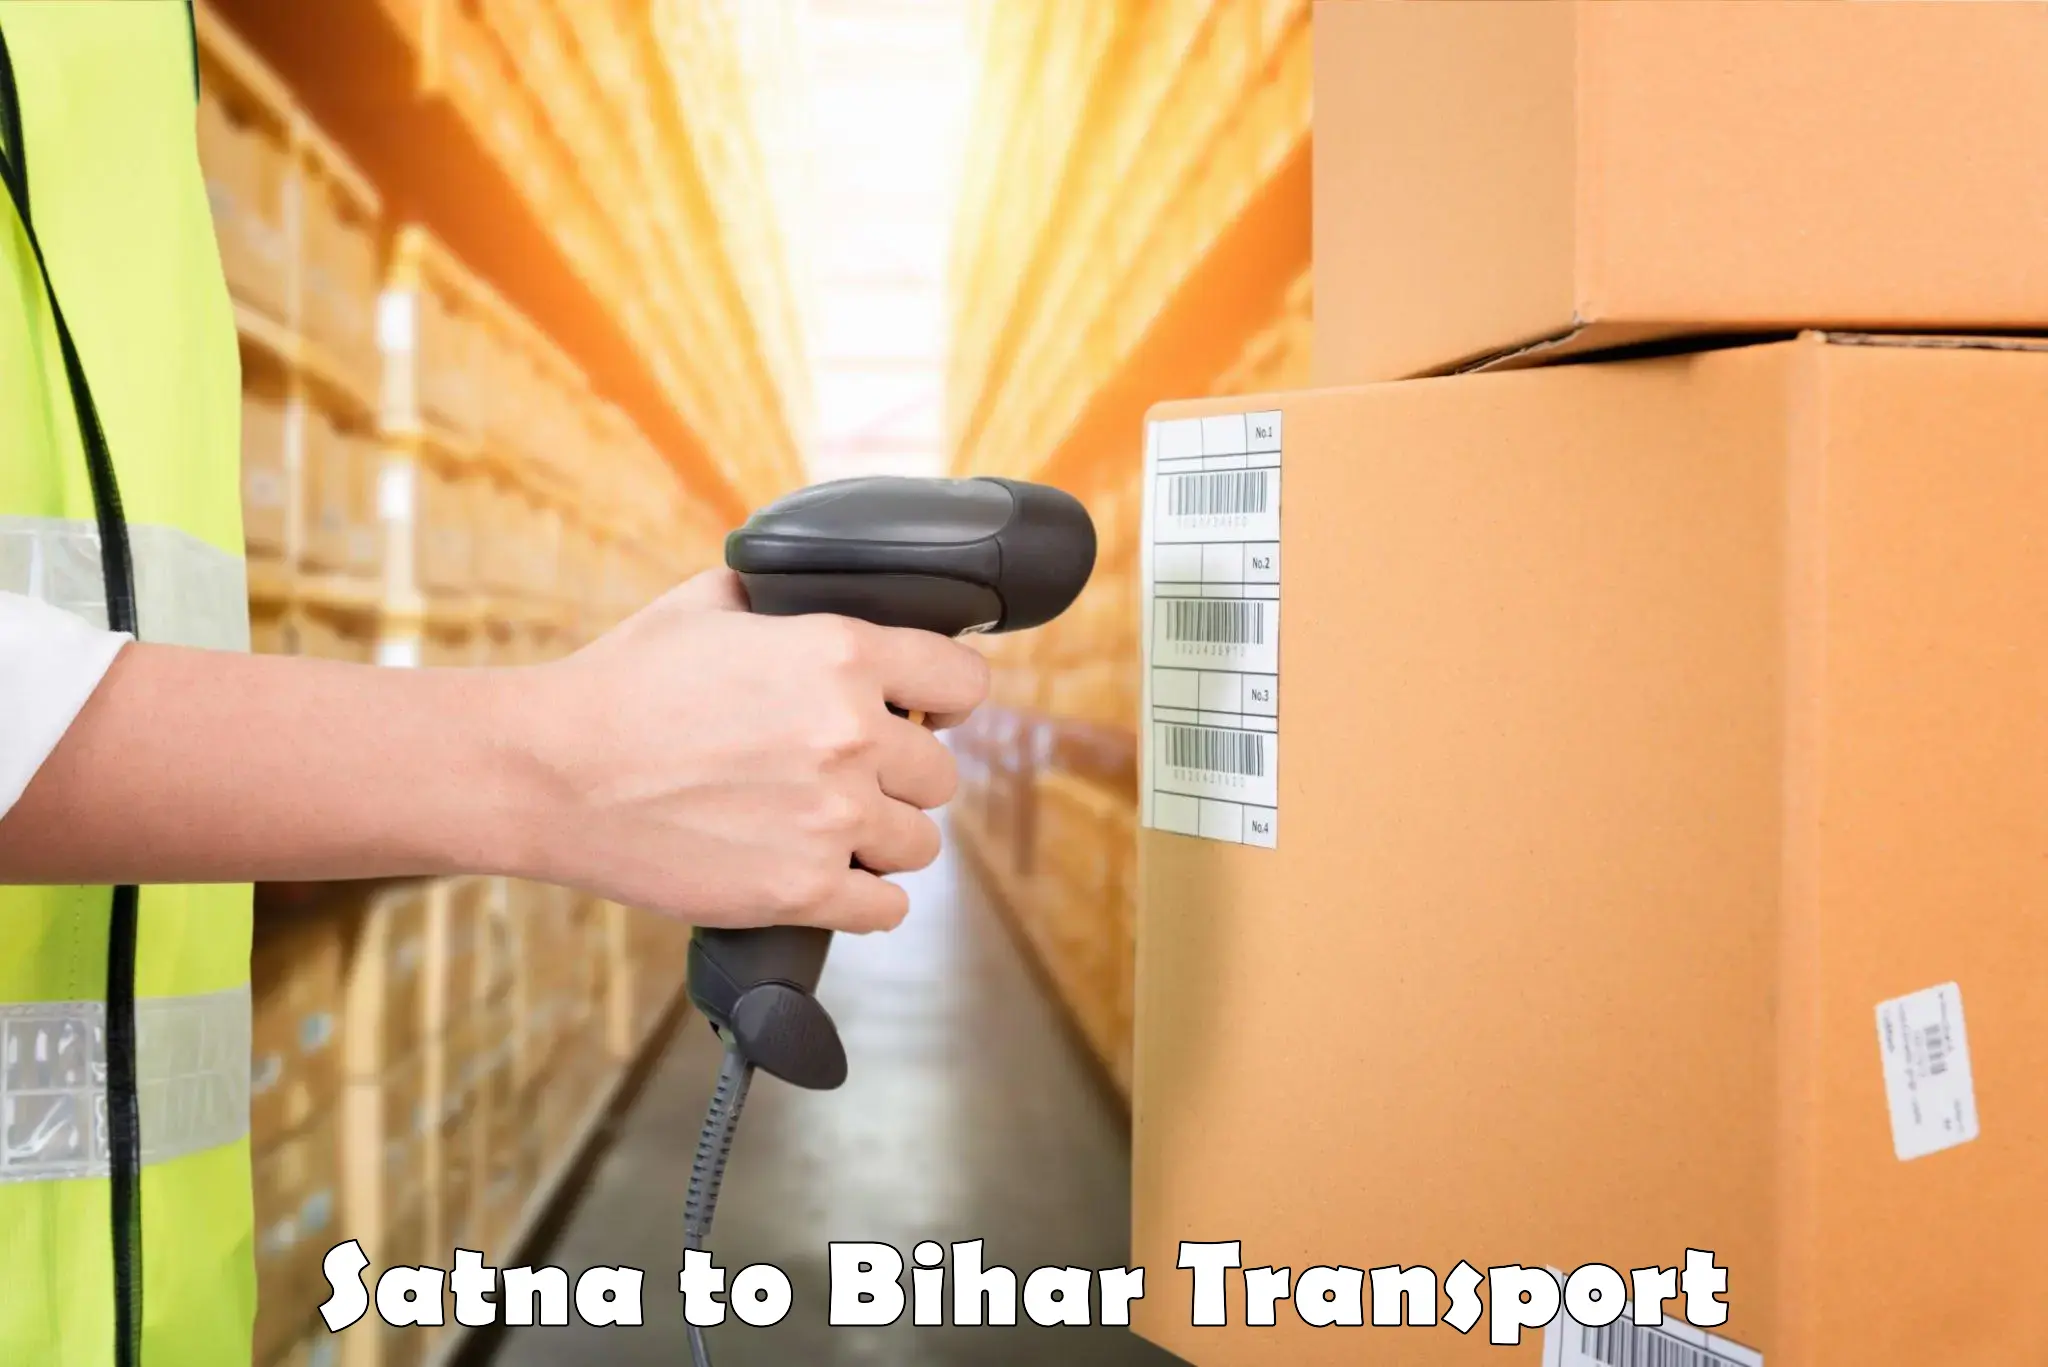 Transport in sharing Satna to Bakhtiarpur